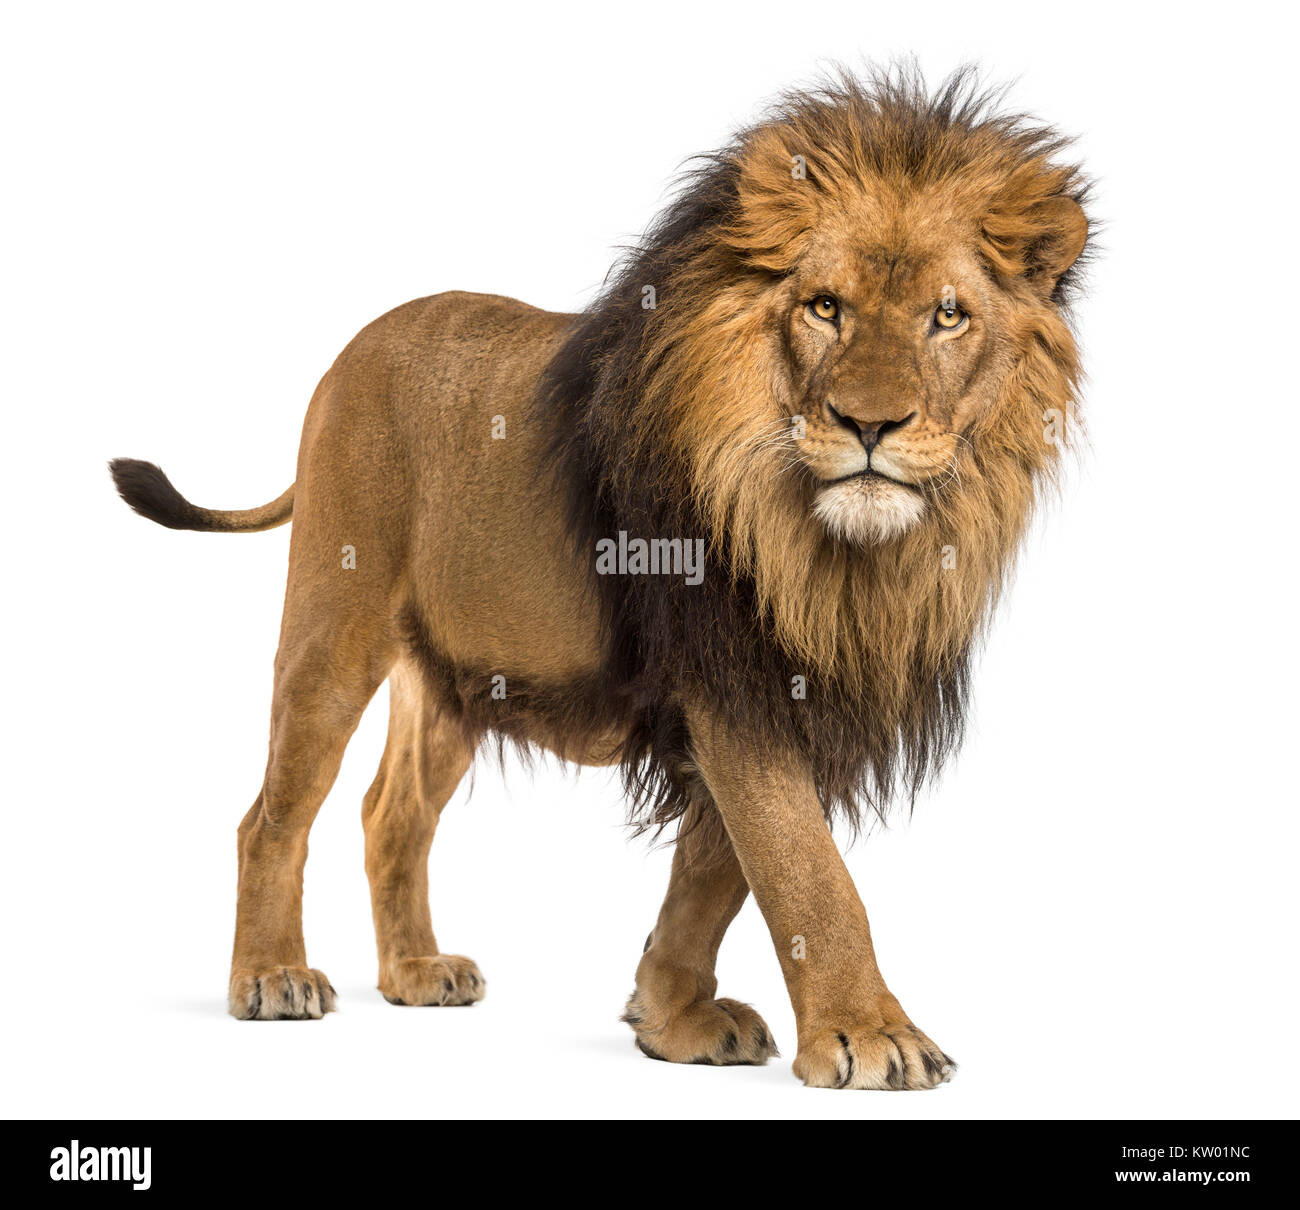 Vue latérale d'un lion, regardant la caméra, Panthera leo, 10 ans, isolated on white Banque D'Images